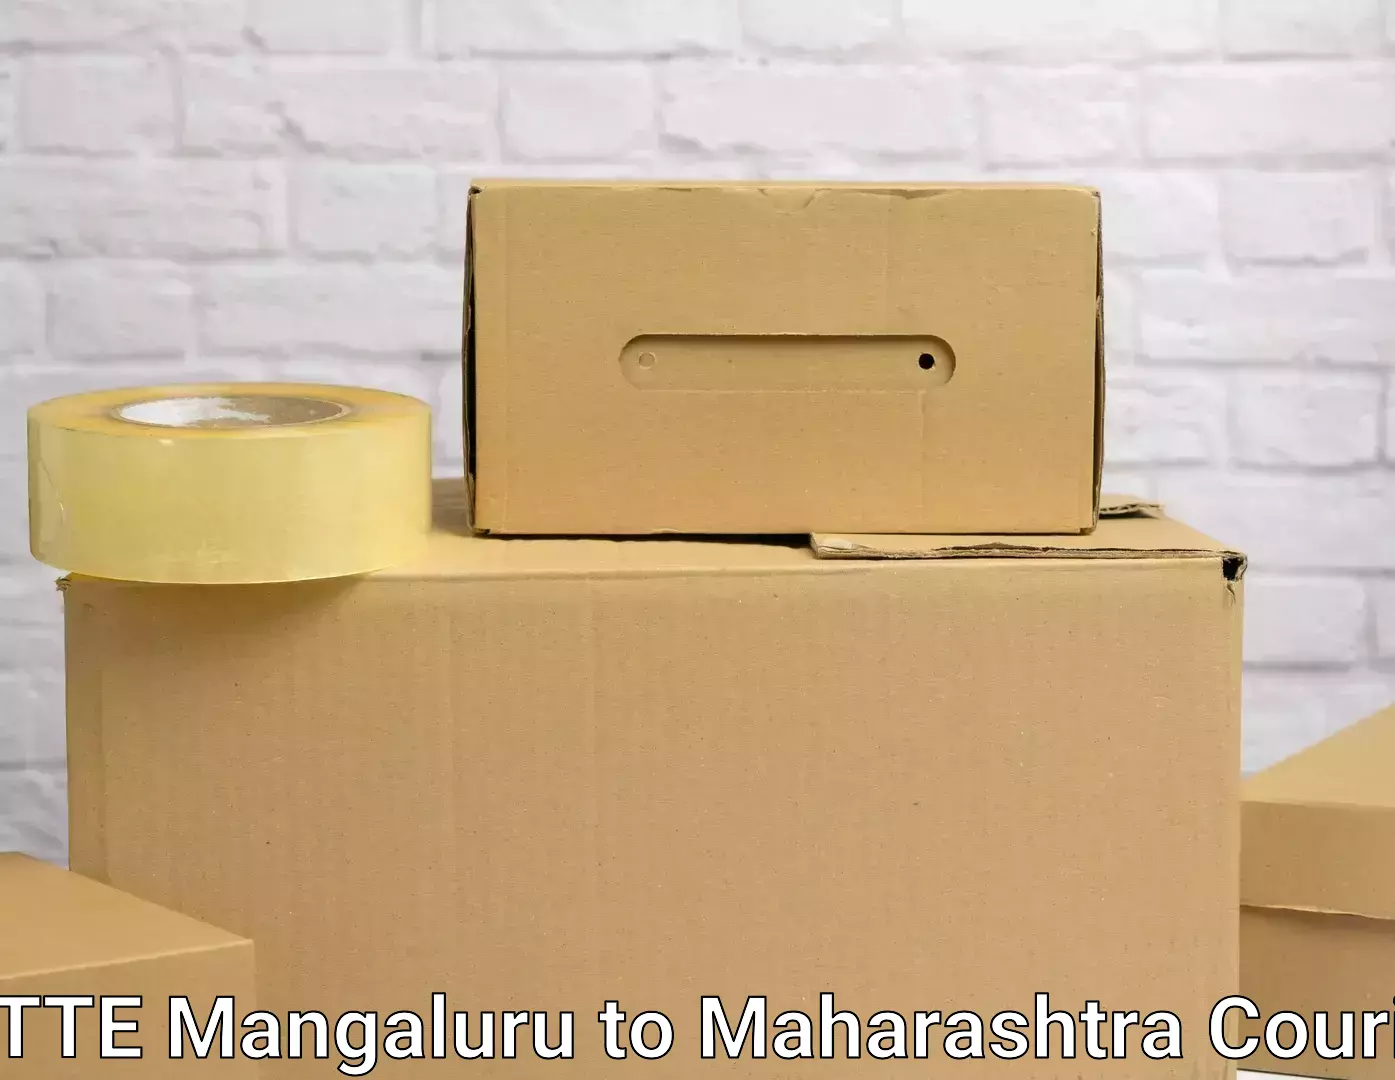 Professional moving company NITTE Mangaluru to Jath